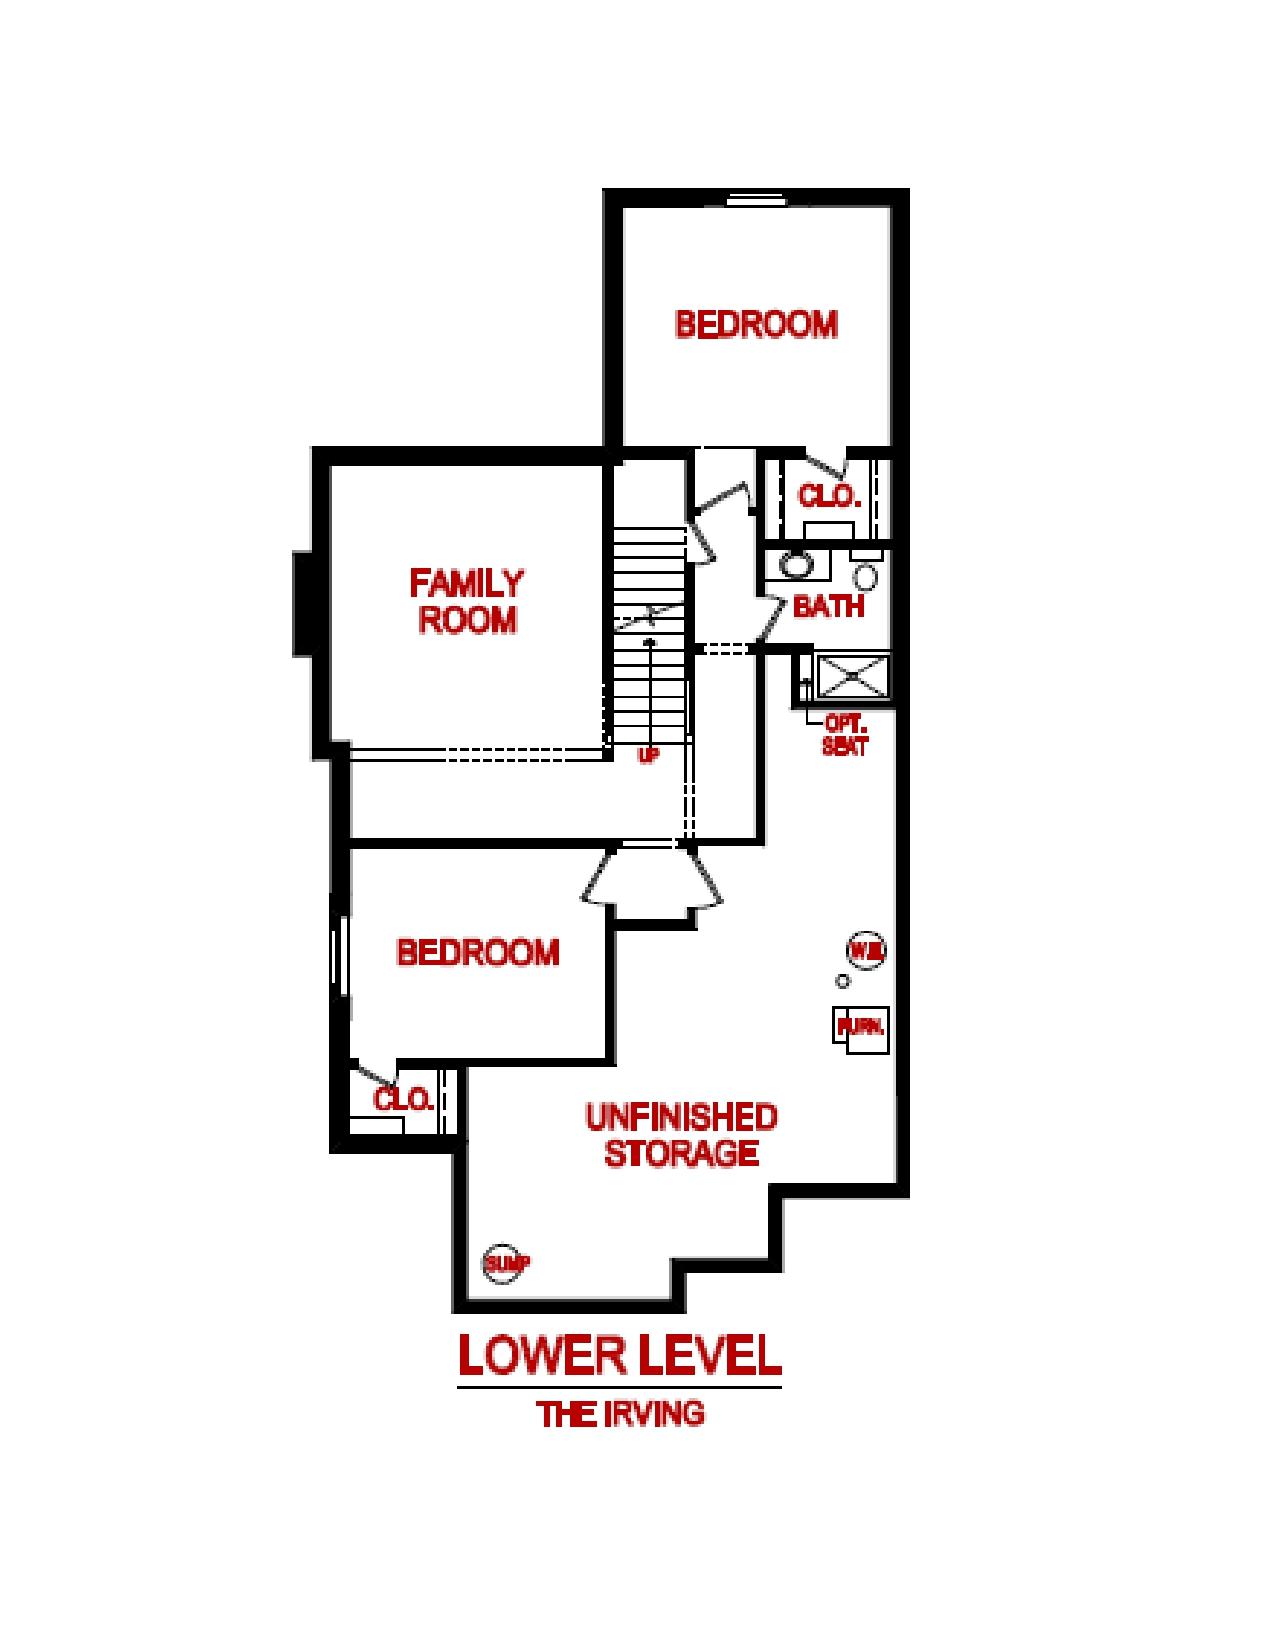 Lower level irving model floor plan from lambie custom homes